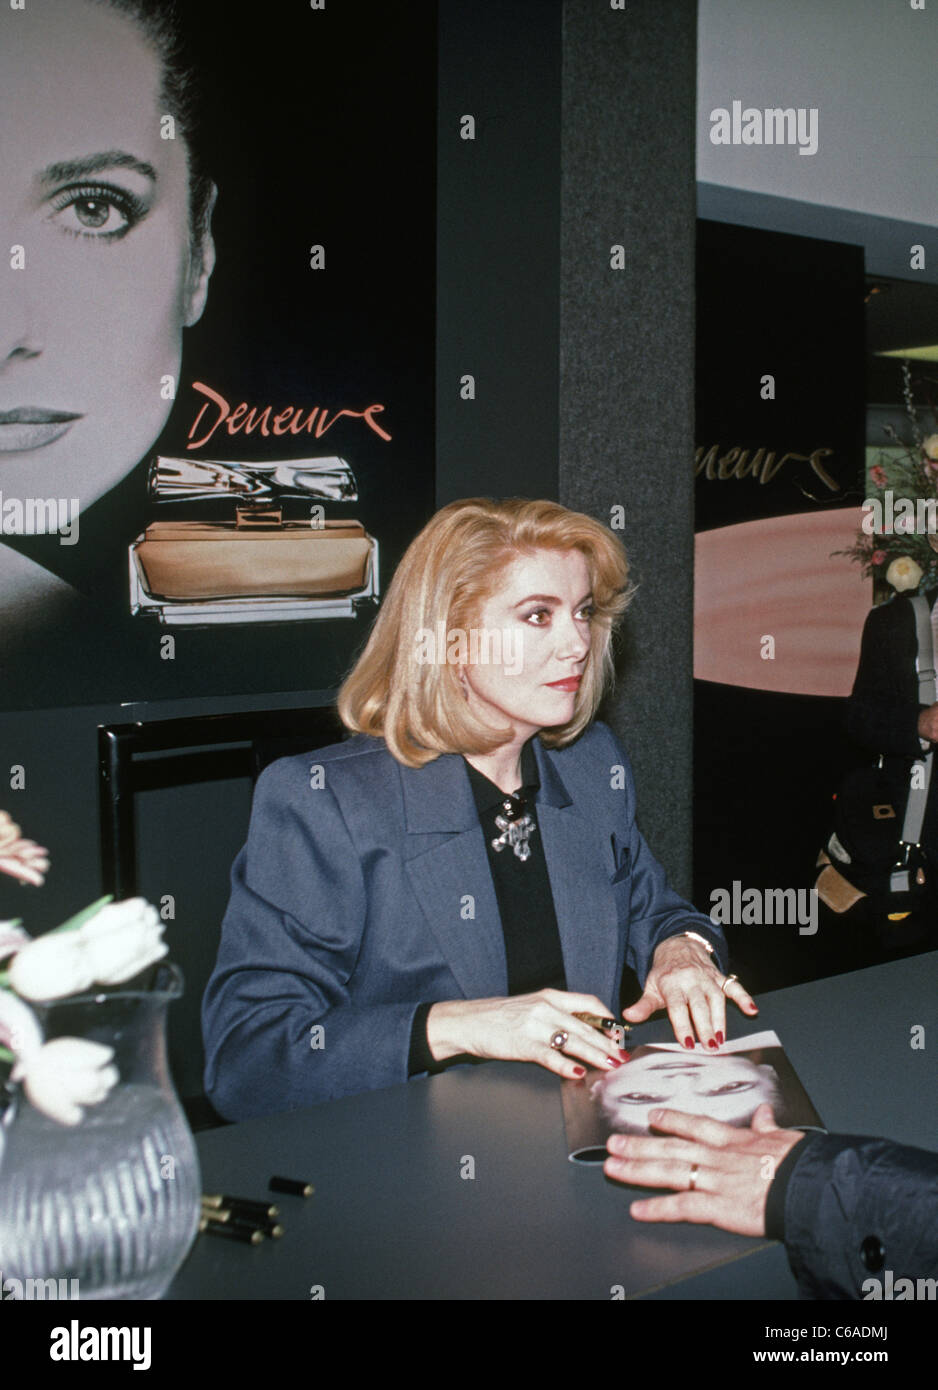 Catherine Deneuve fördert ihr Parfüm in einem Kaufhaus von San Francisco. 1988. Kalifornien, USA. Stockfoto